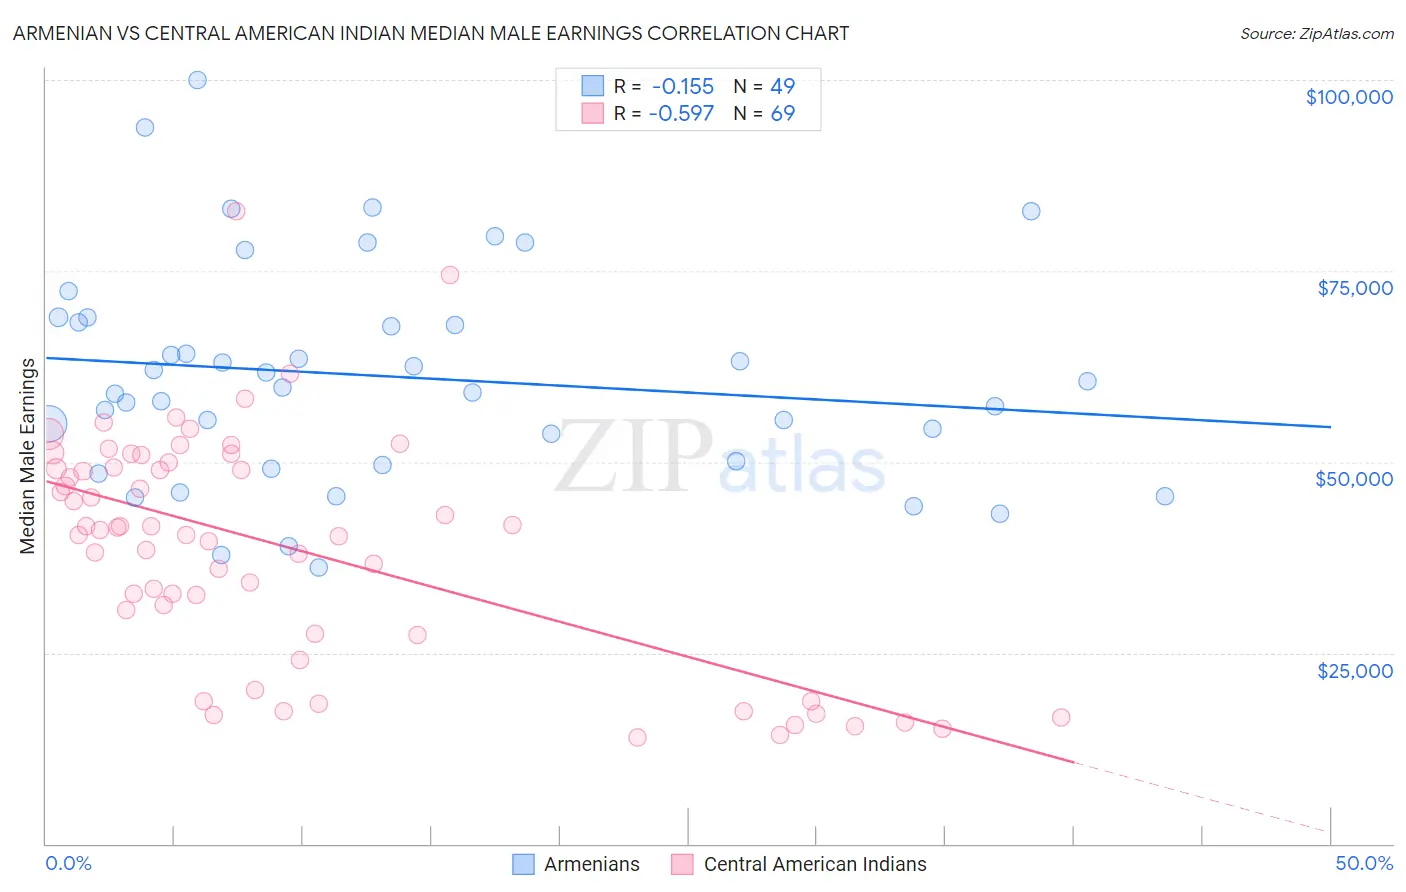 Armenian vs Central American Indian Median Male Earnings